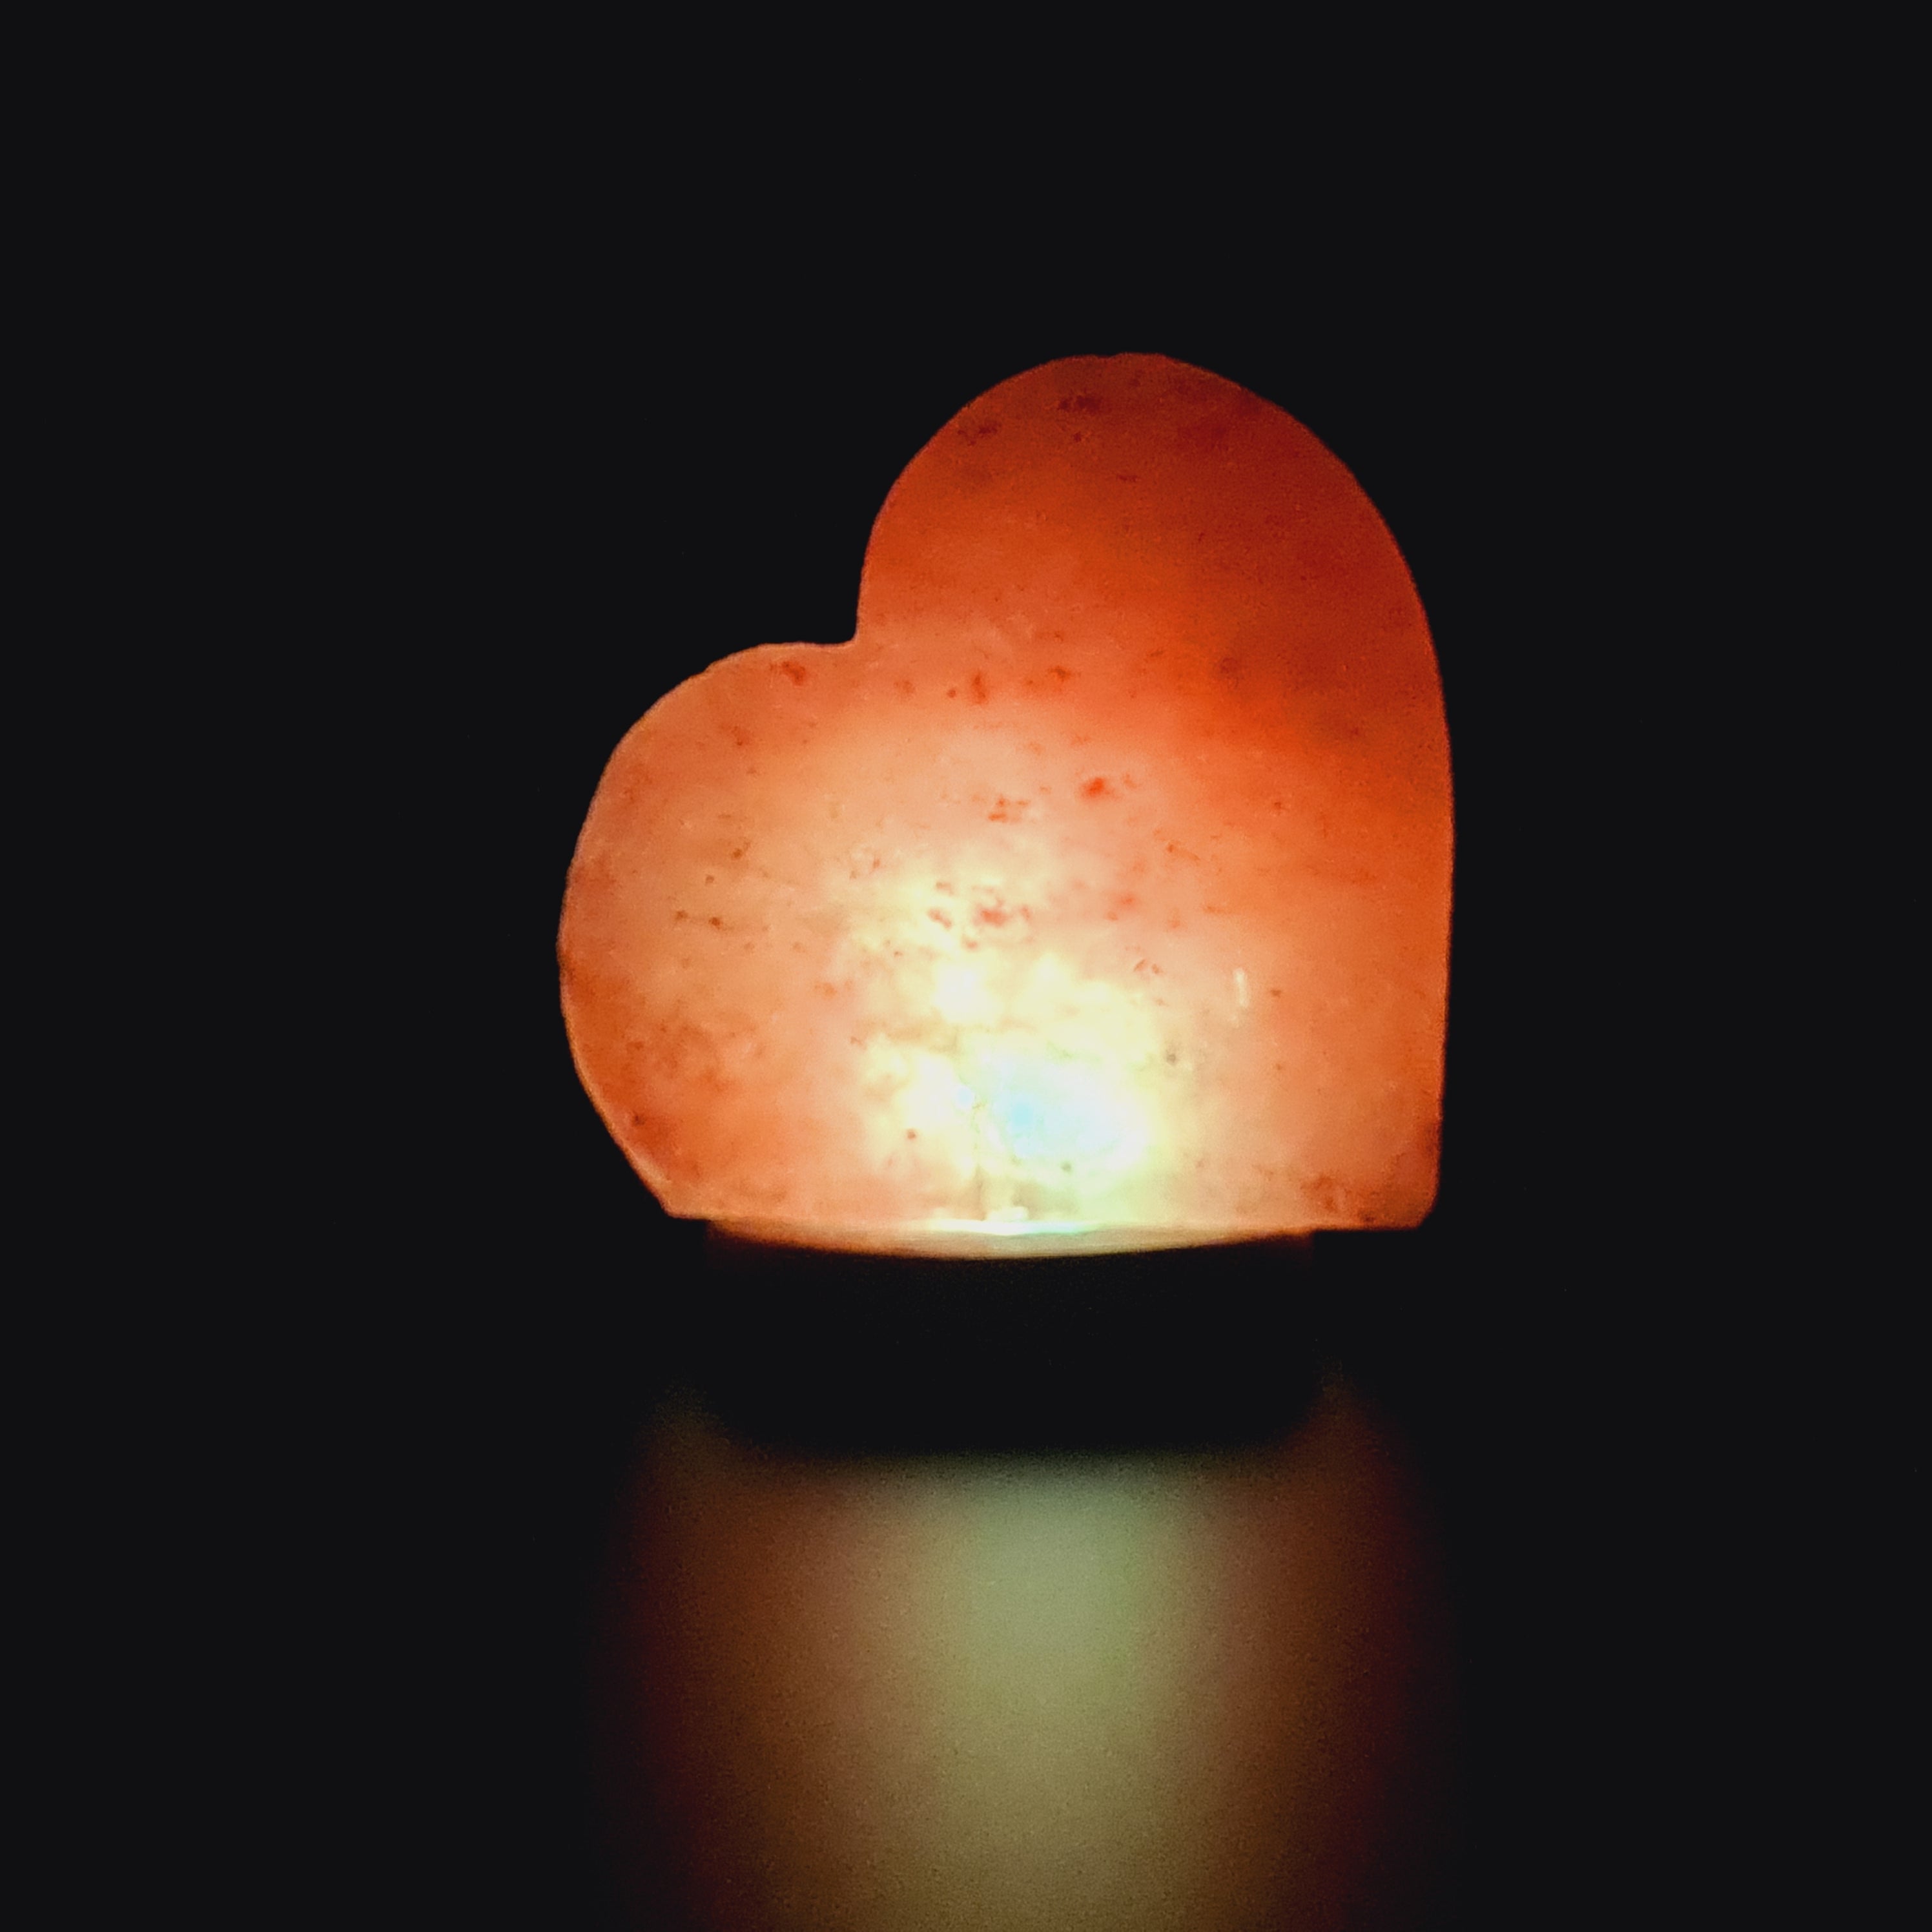 Himalayan Salt Colour Changing USB Lamp - Heart